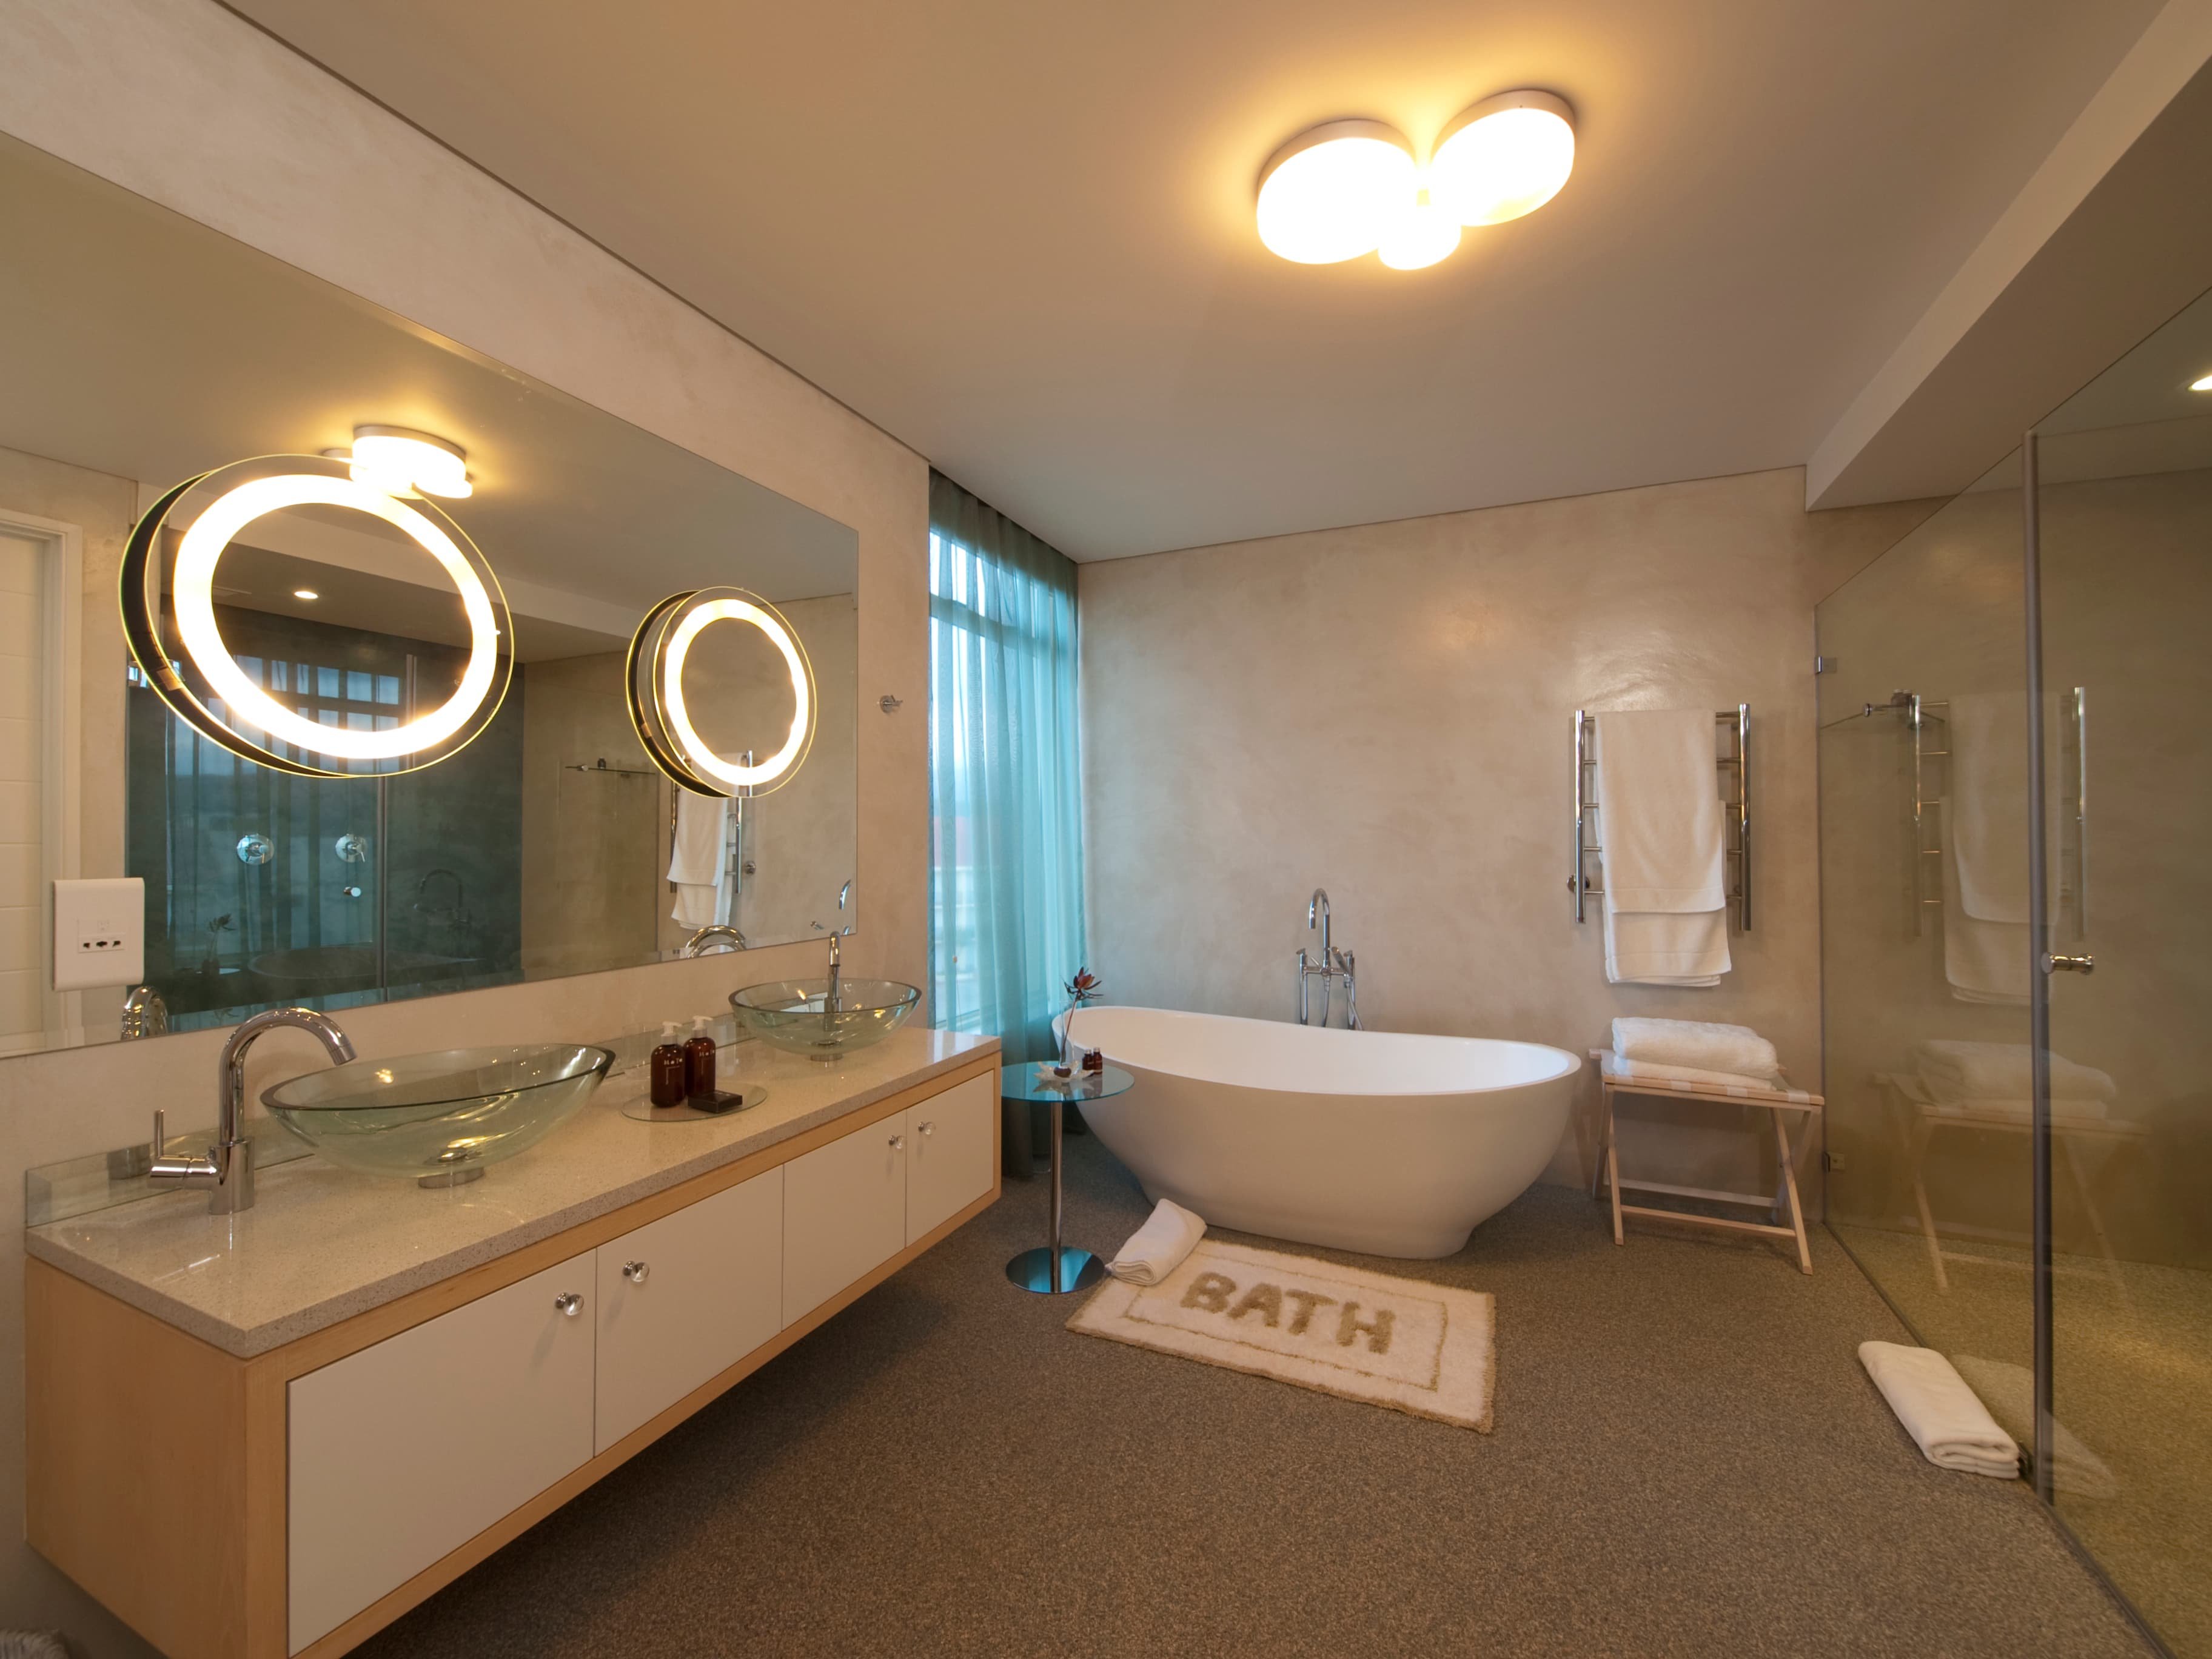 Освещение ванной комнаты: разновидности люстр и светильников, критерии выбора и фото идей оформления